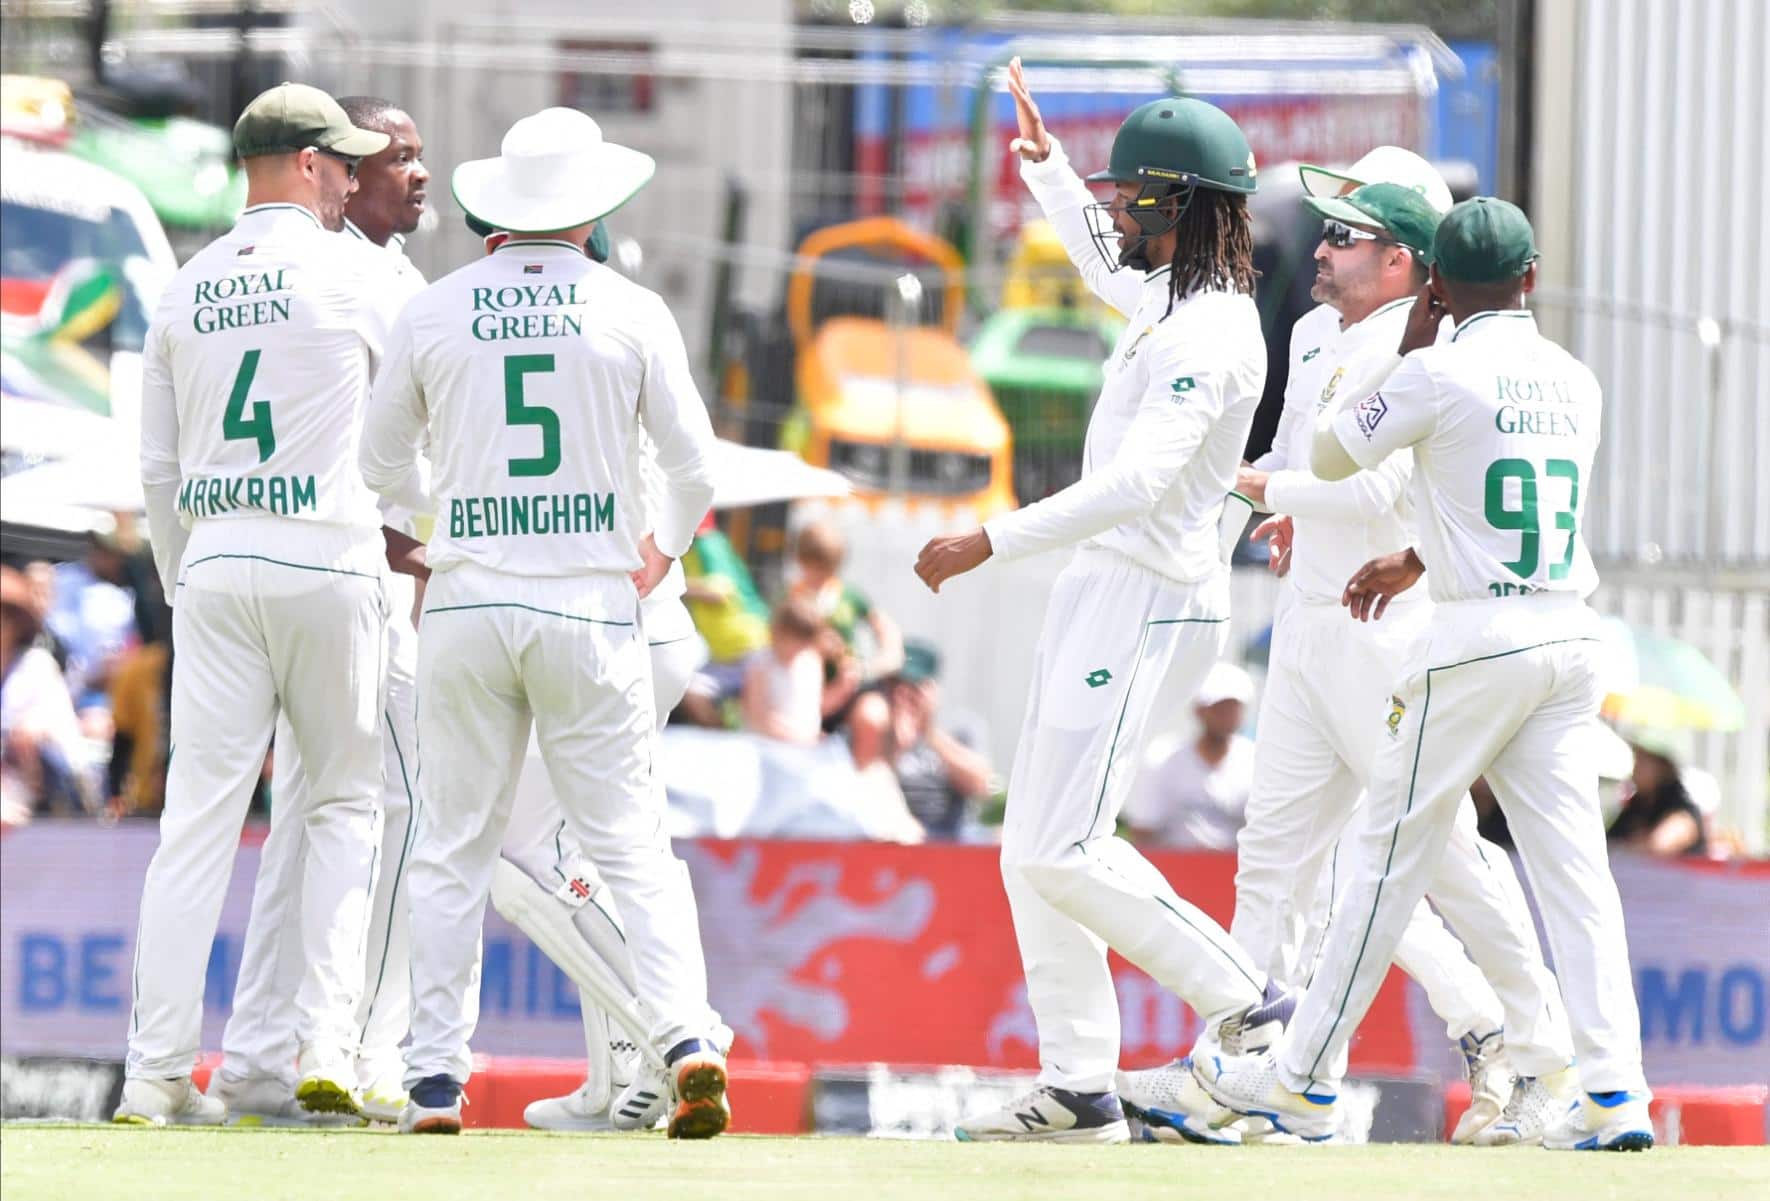 वेस्टइंडीज़ के ख़िलाफ़ टेस्ट सीरीज़ के लिए दक्षिण अफ़्रीकी टीम की हुई घोषणा